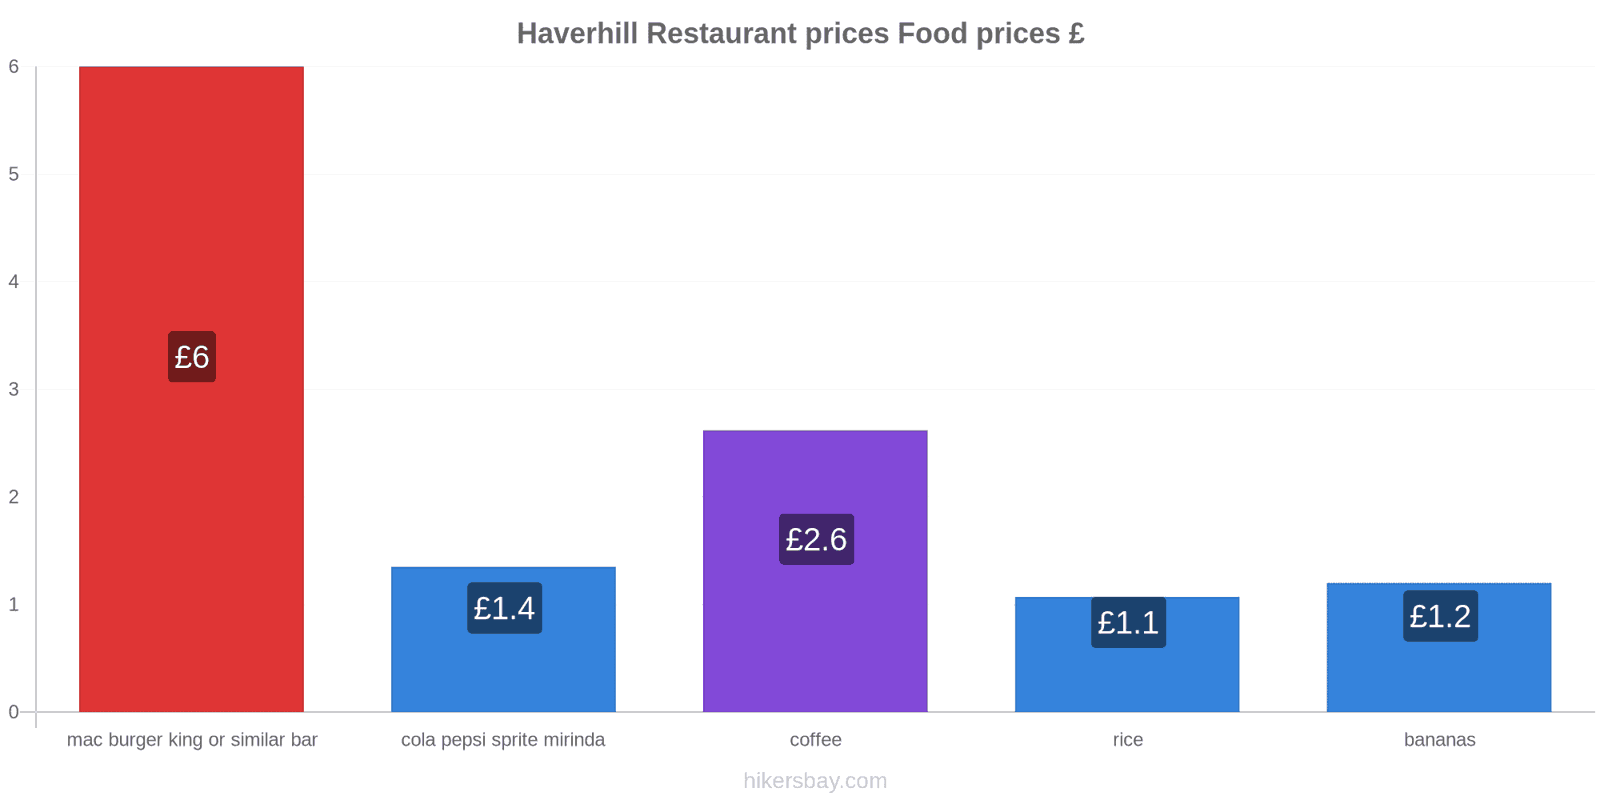 Haverhill price changes hikersbay.com